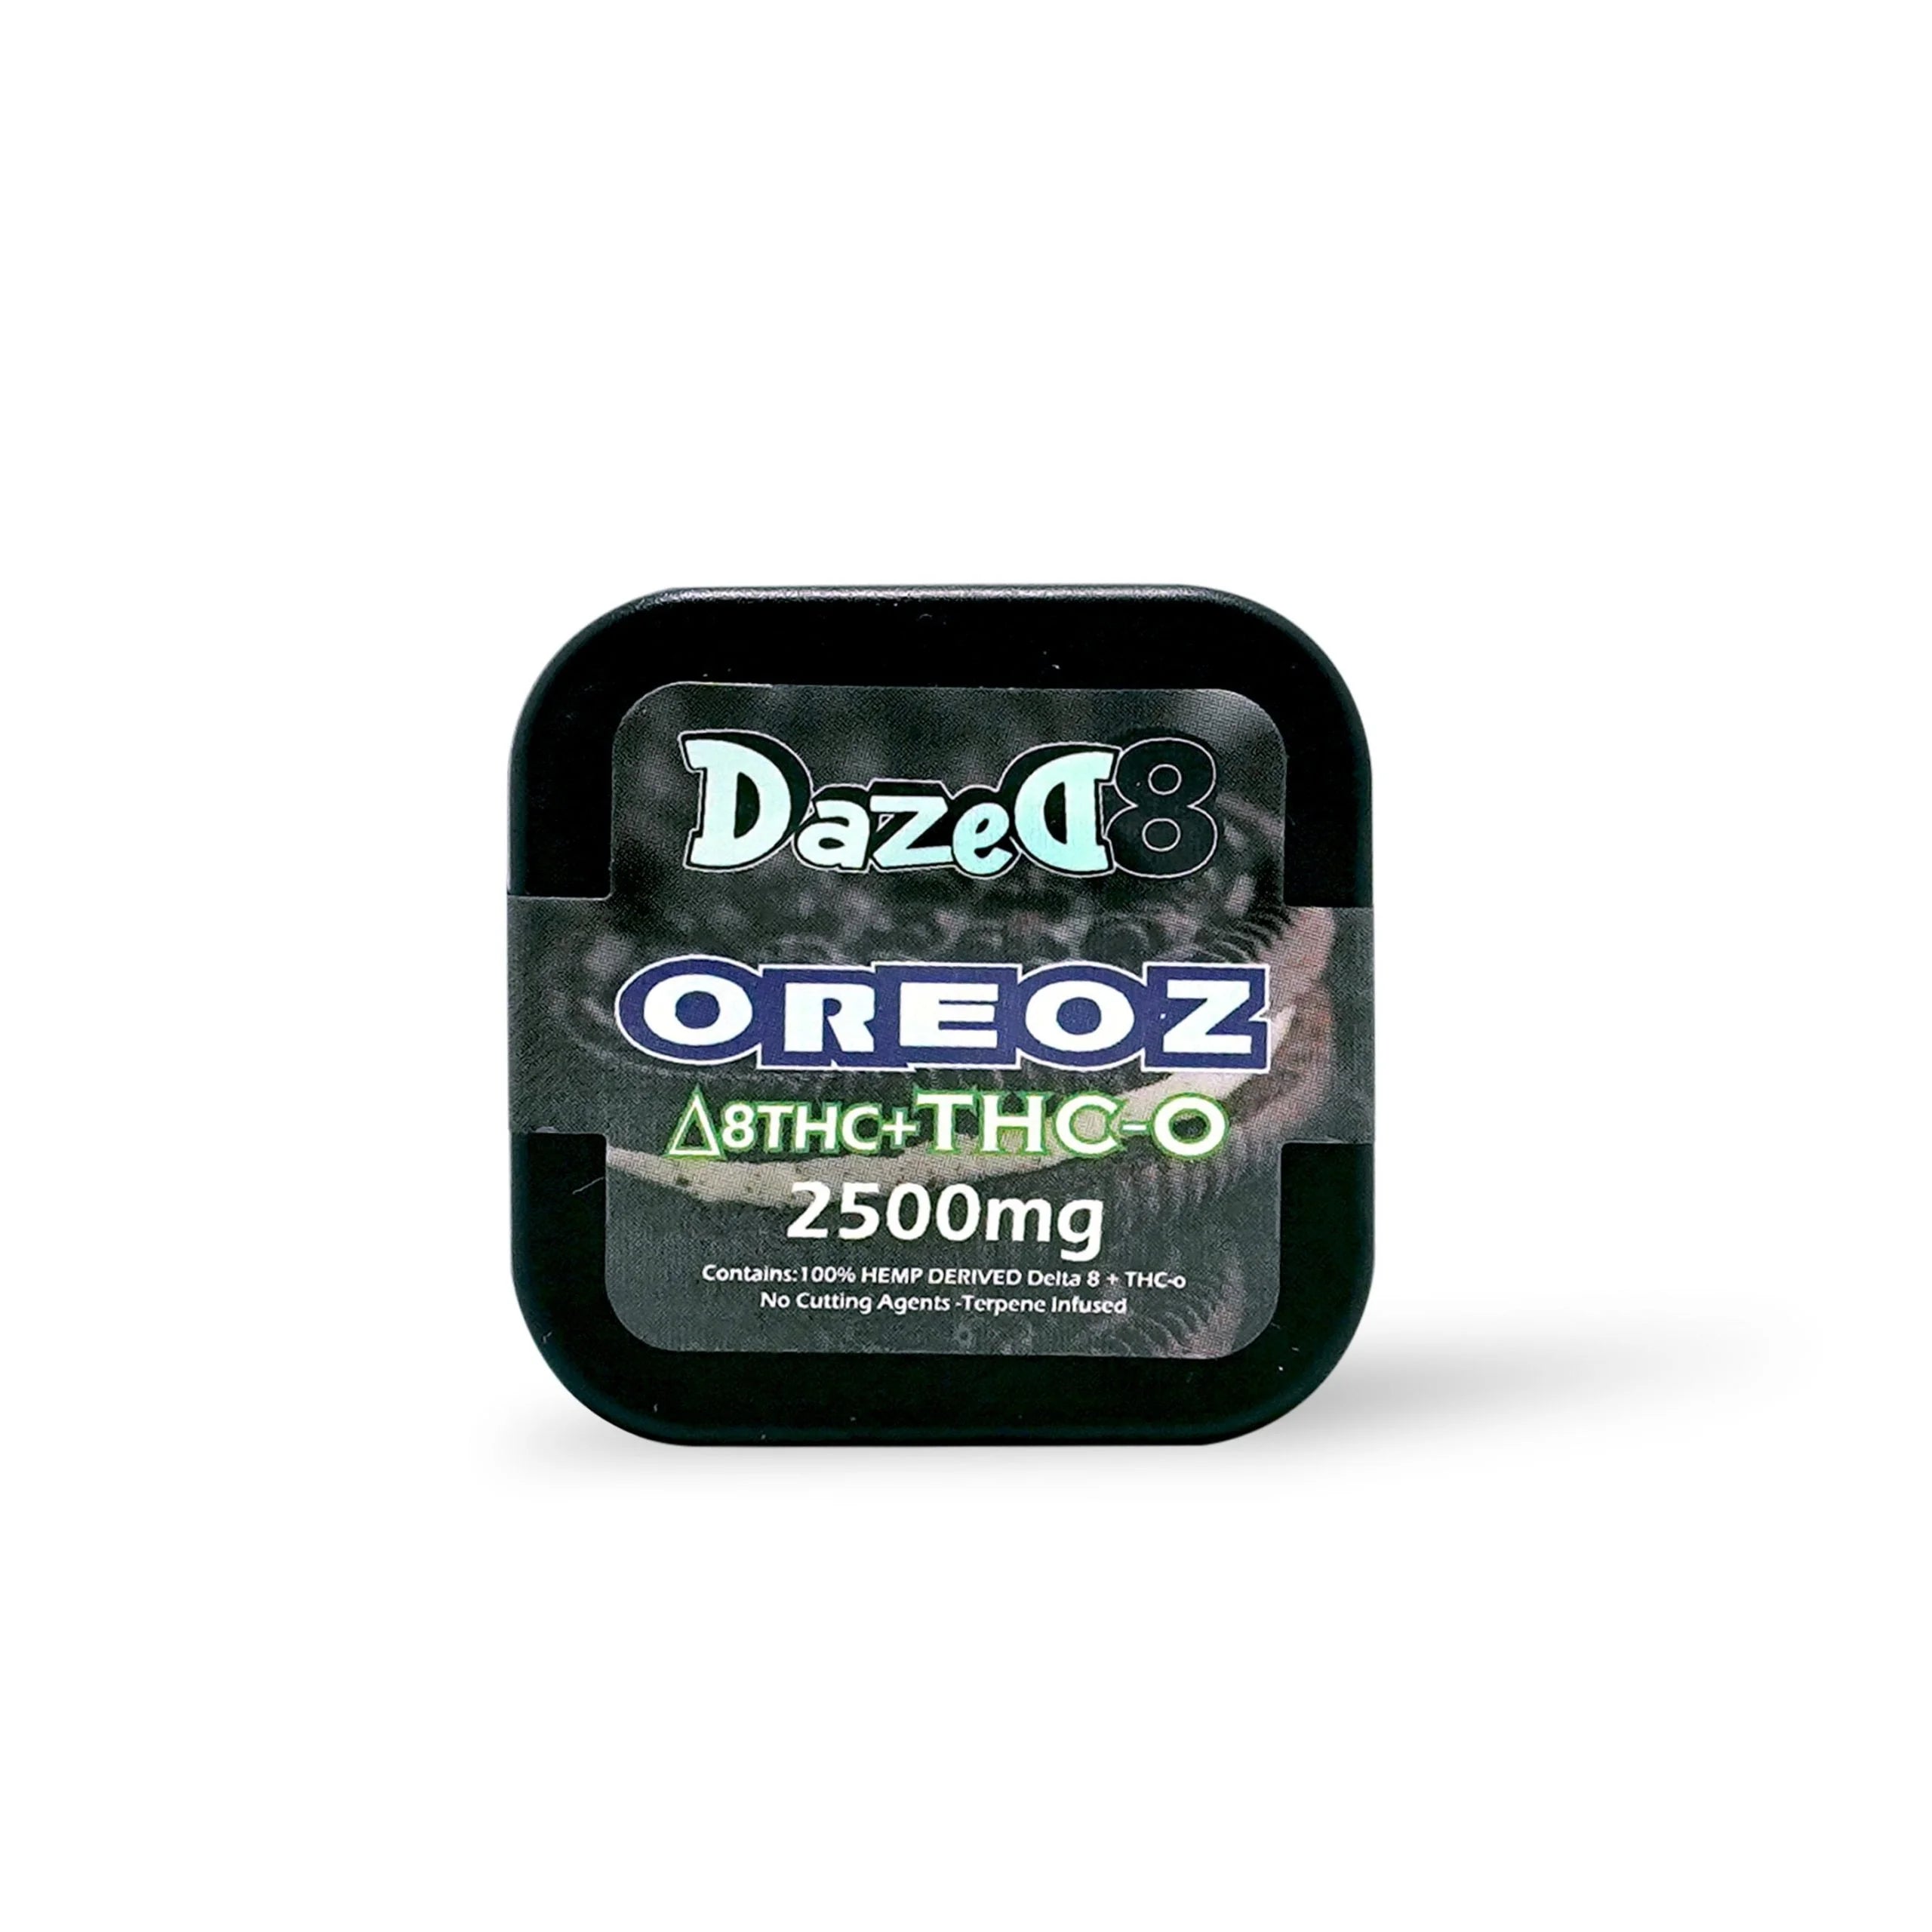 DazeD8 Oreoz Delta 8 THC-O Dab Best Price